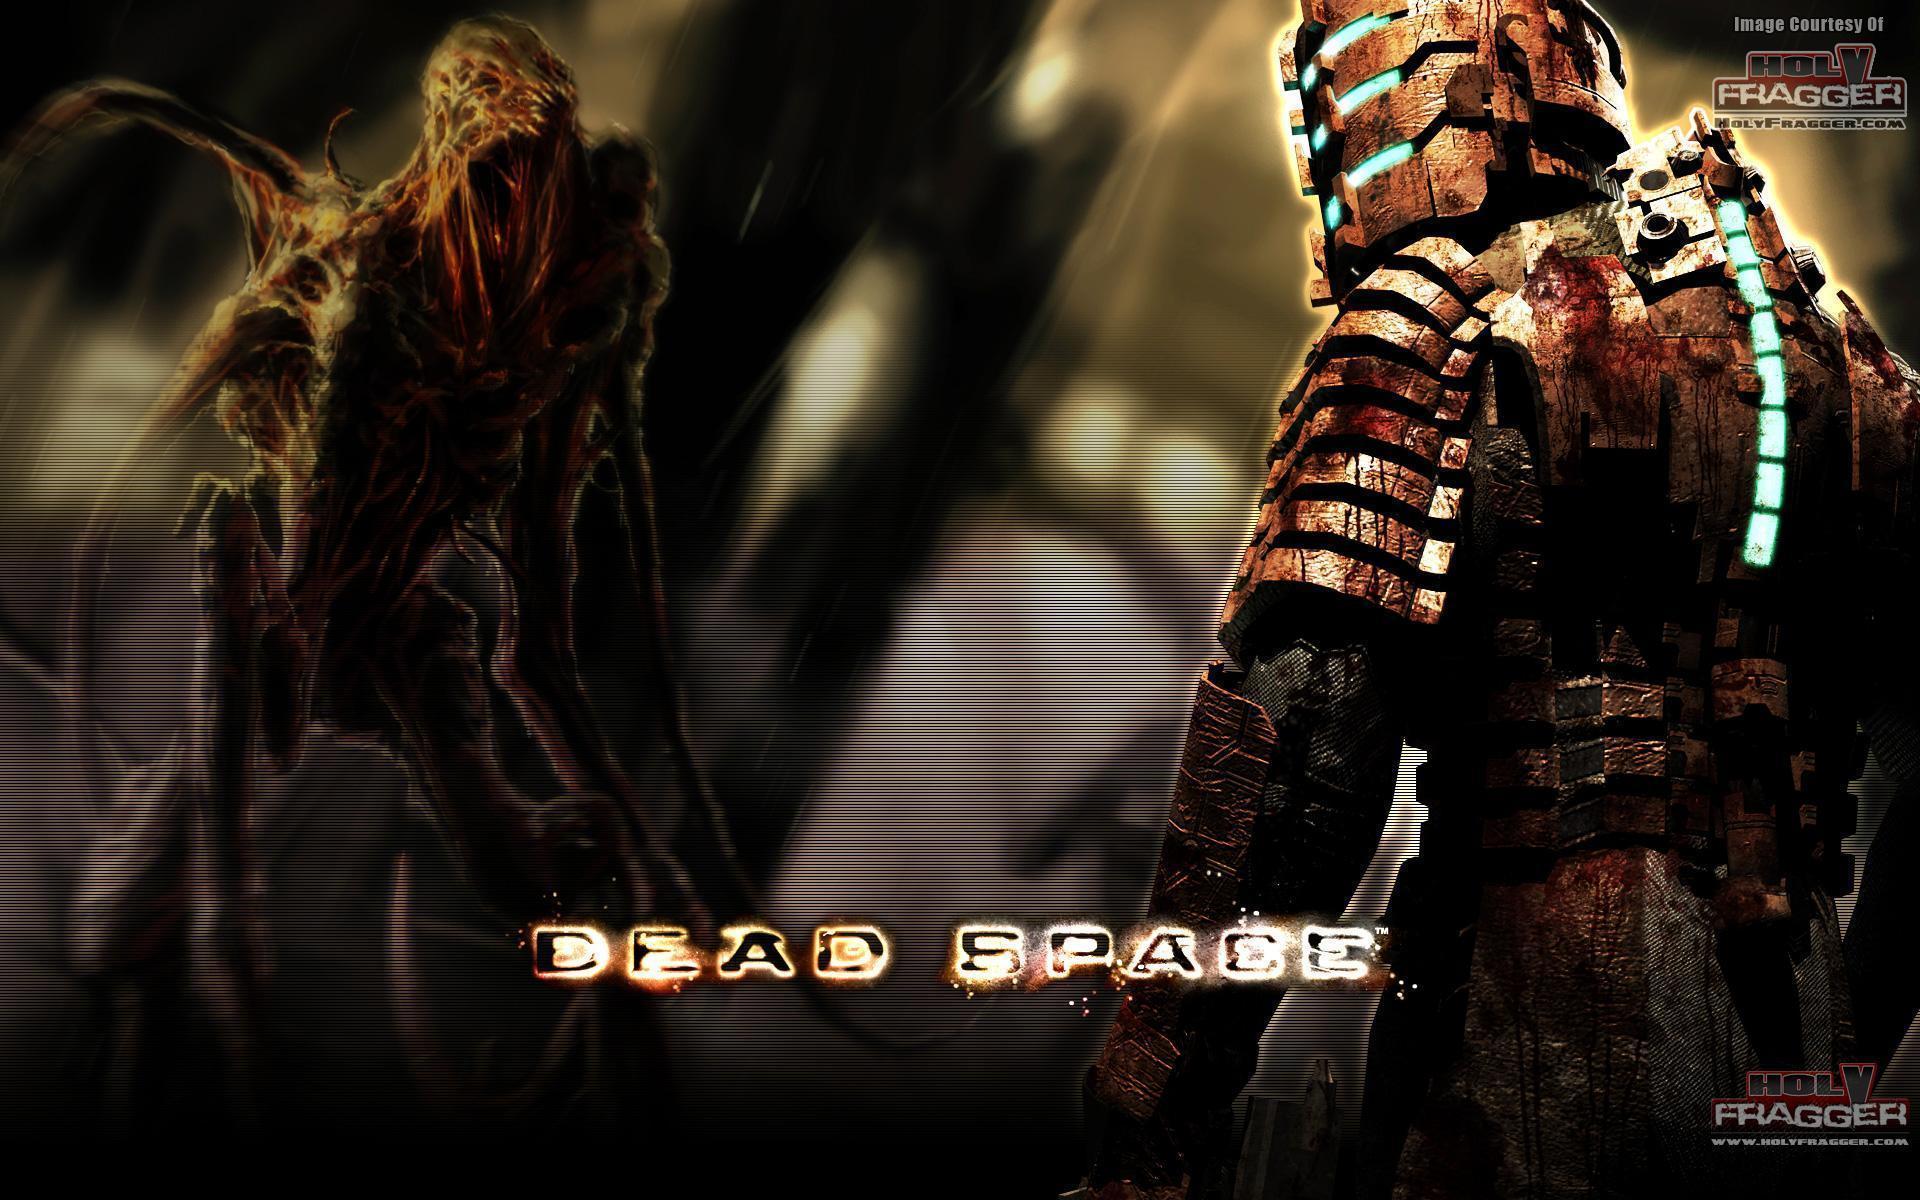 Berserker: Dead Space Wallpaper